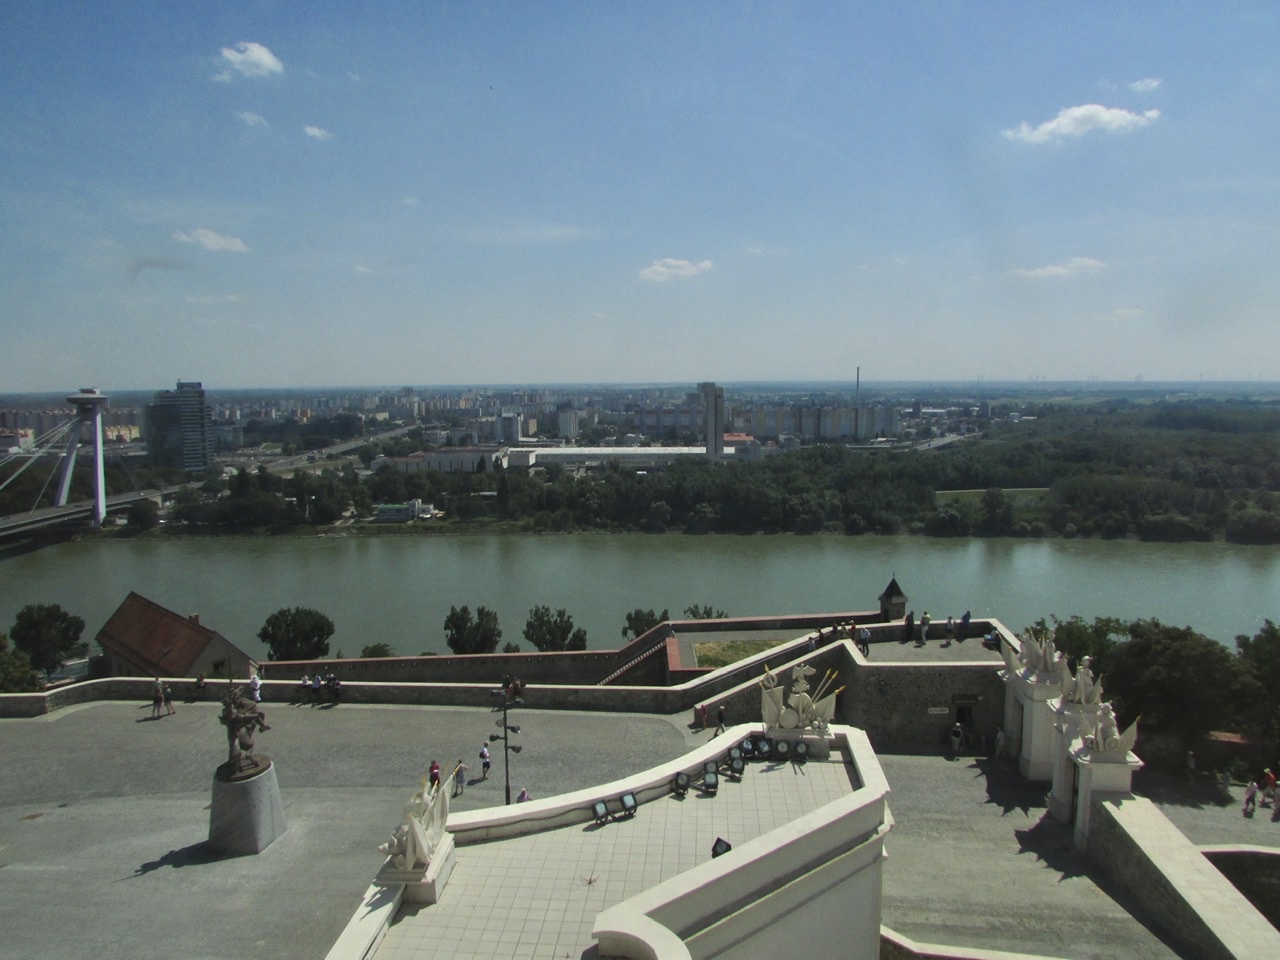 Vista panorâmica do rio Danubio a partir dos jardins do castelo de Bratislava